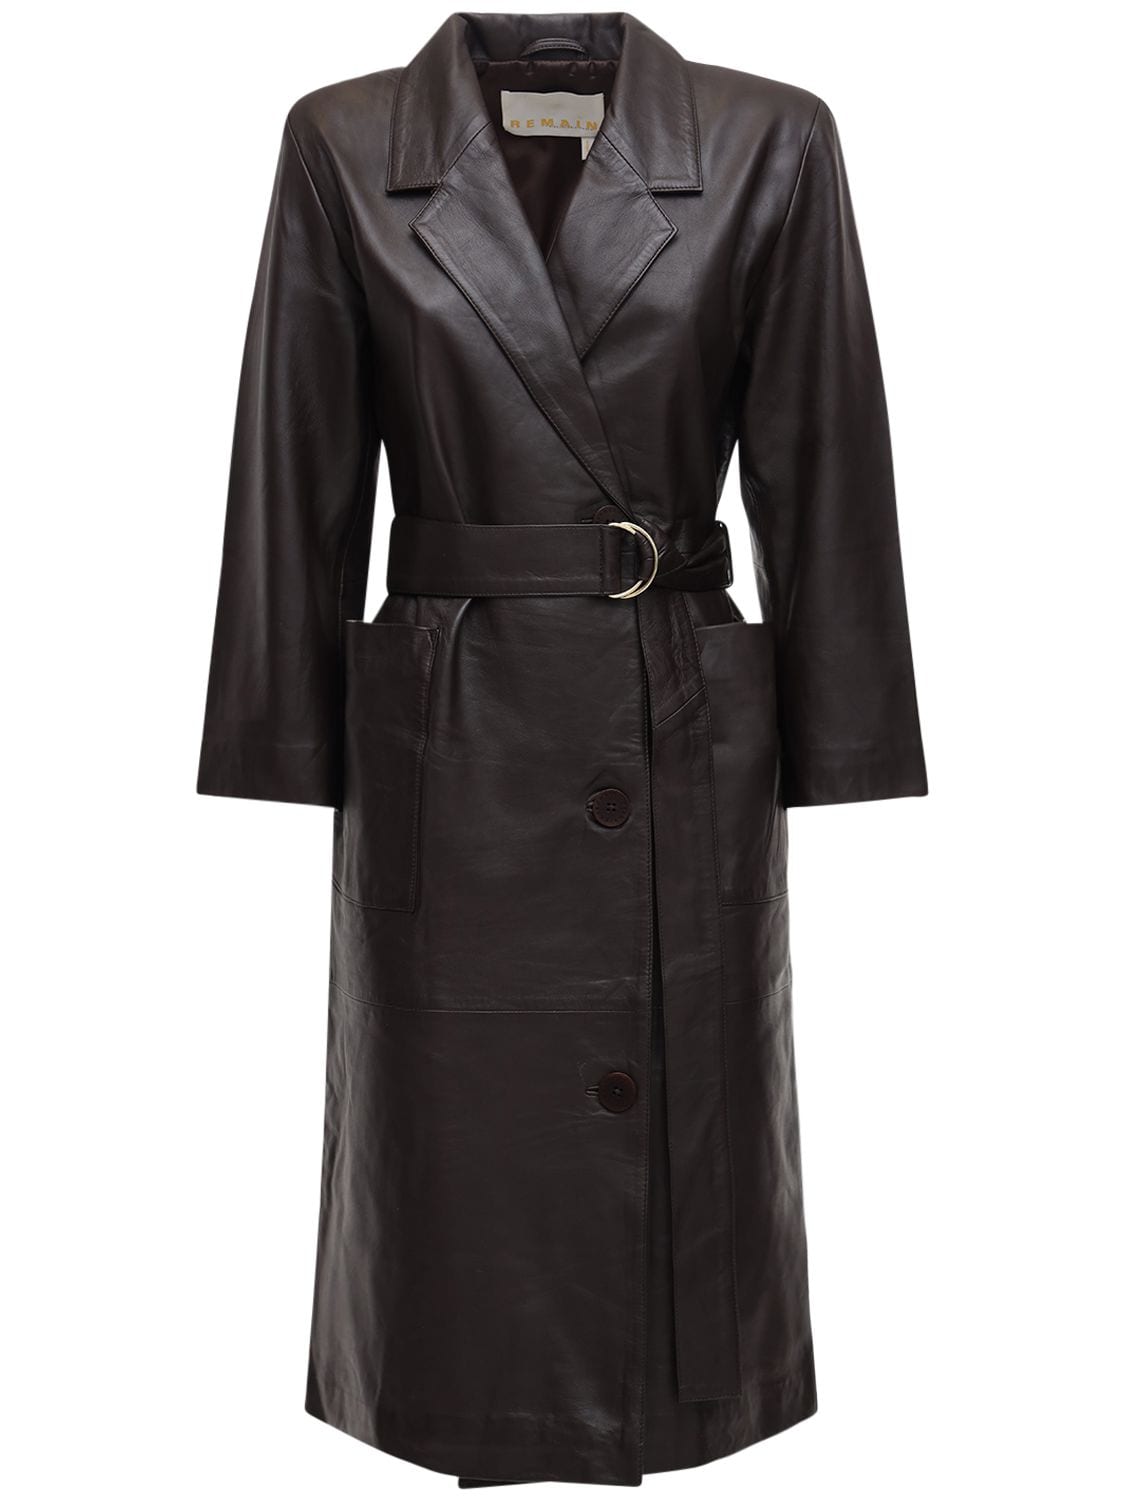 Remain Anna Leather Blazer Dress In Dark Brown | ModeSens